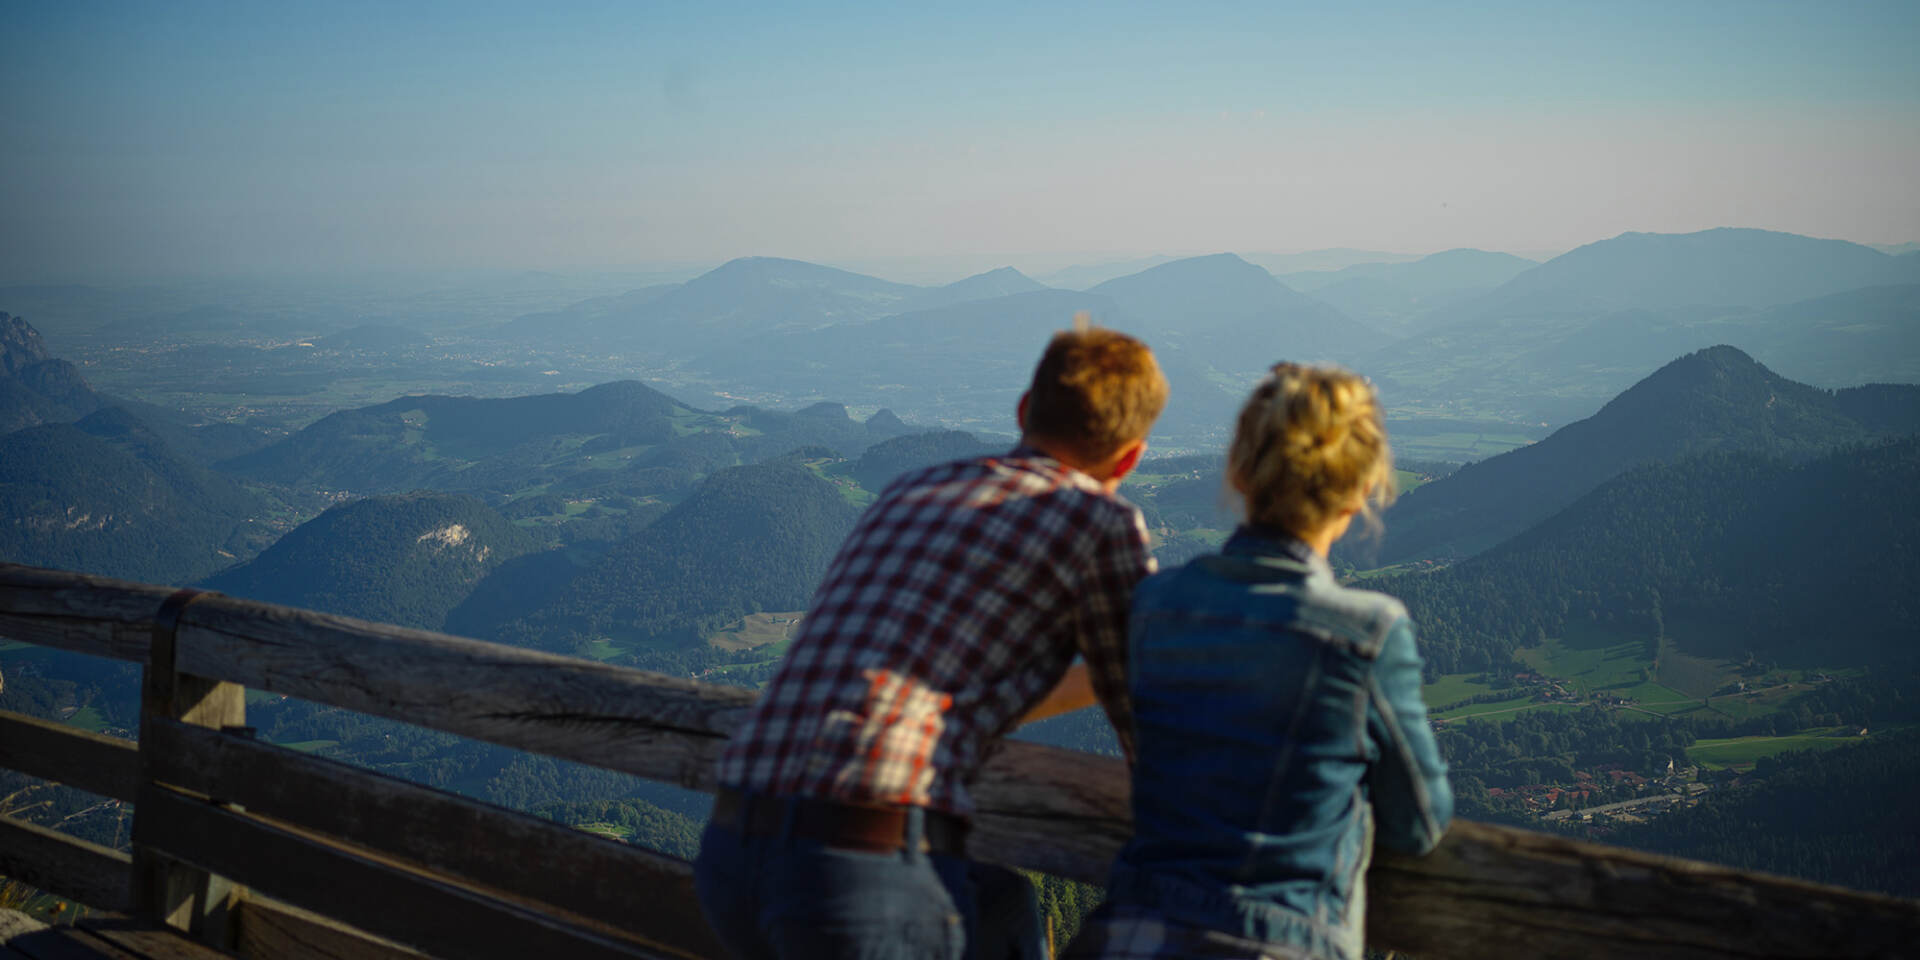 Besucher des Kehlsteinhauses lehnen an Geländer und bestaunen die Bayerischen Alpen - Kehlsteinhaus Tour mit Salzburg Panorama Tours